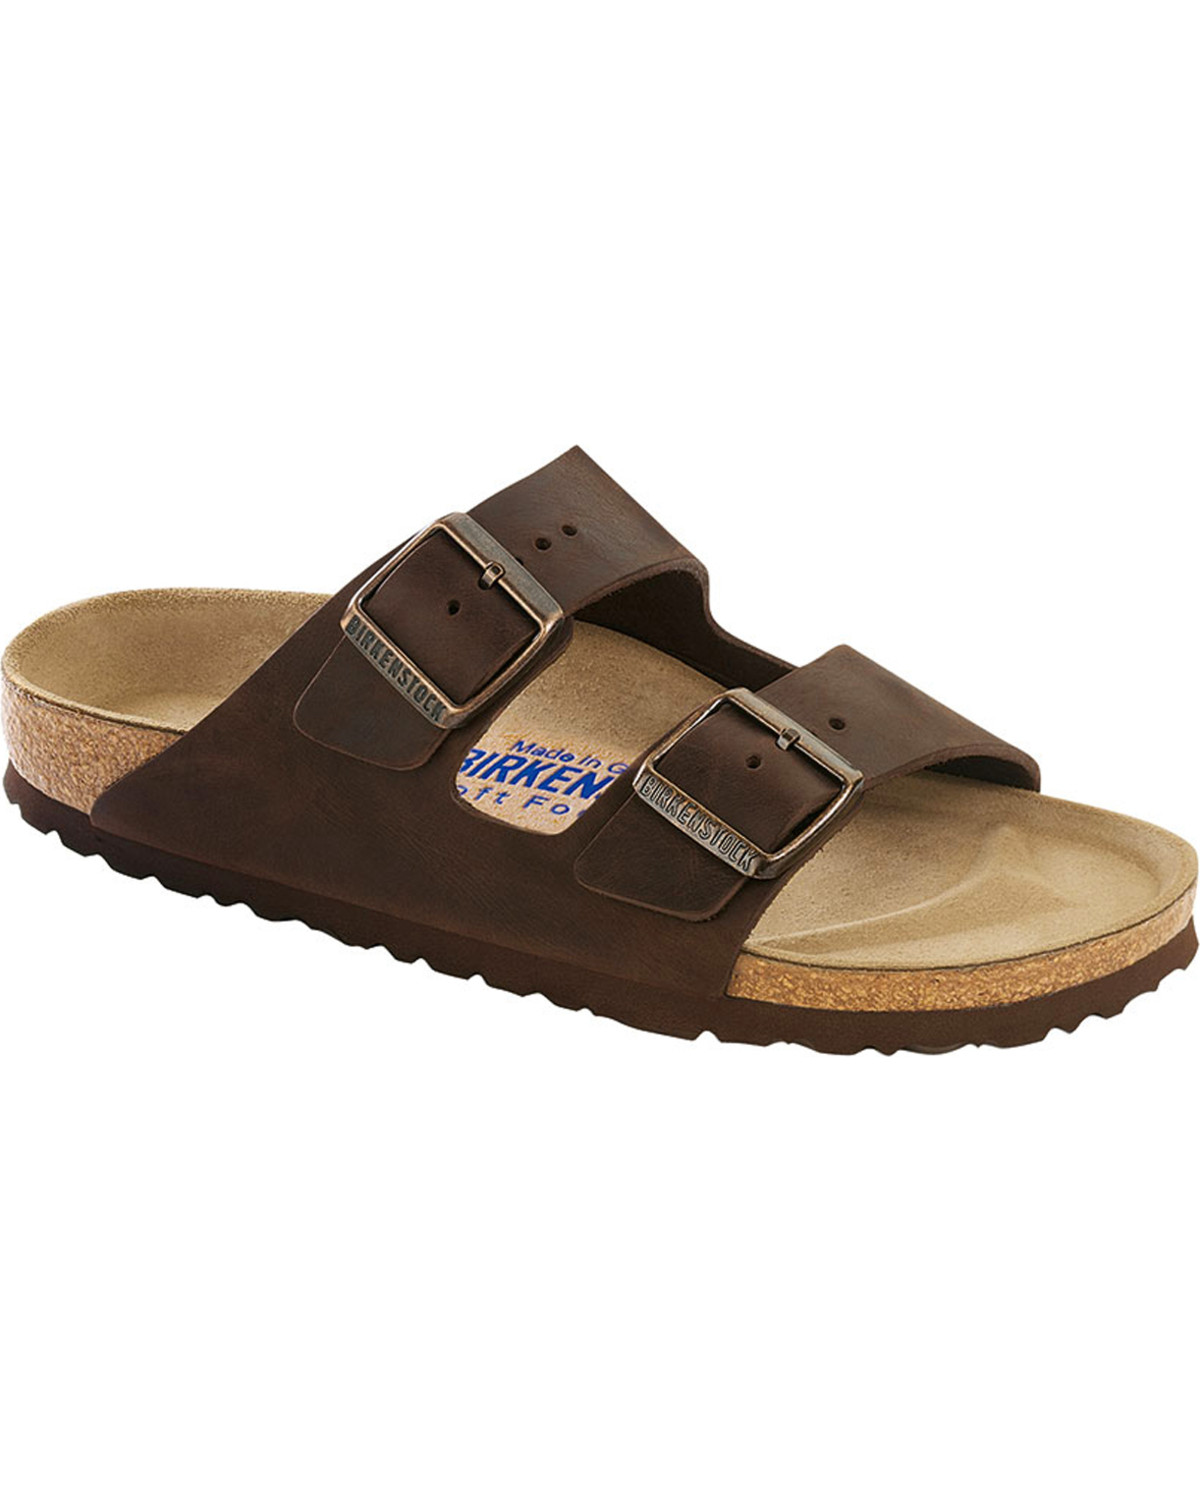 birkenstock womens brown sandals